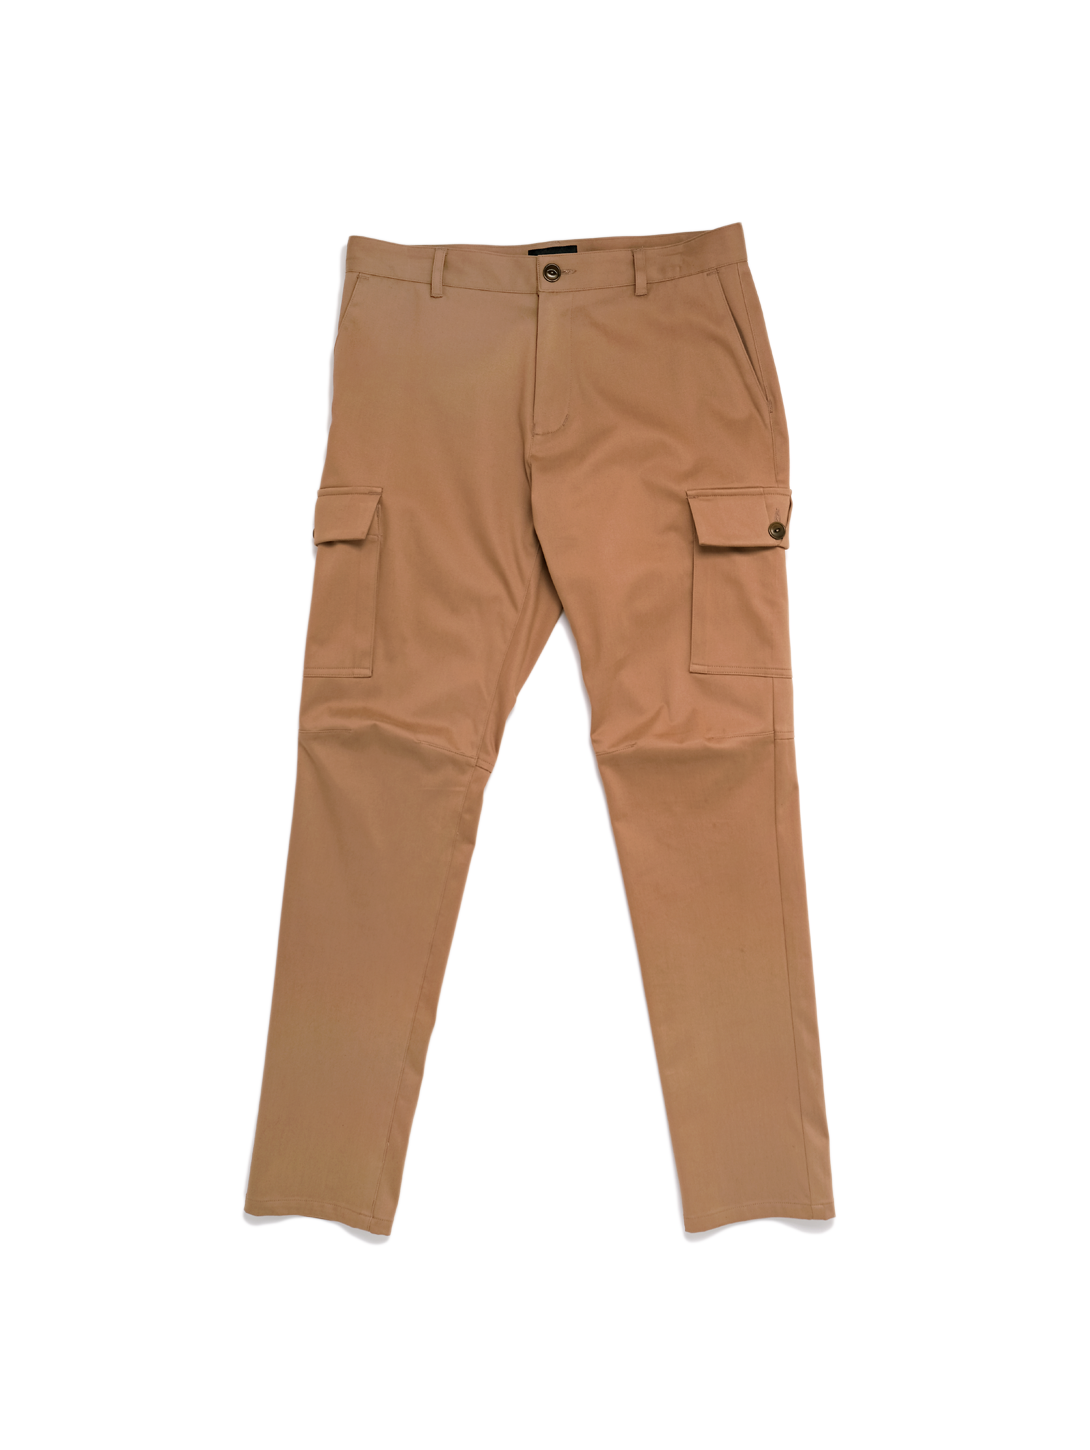 Hanas 2023 Mens Pants Fashion Mens Solid Drawstring Pocket Sports Trousers  Casual Beam Feet Pants Black L 